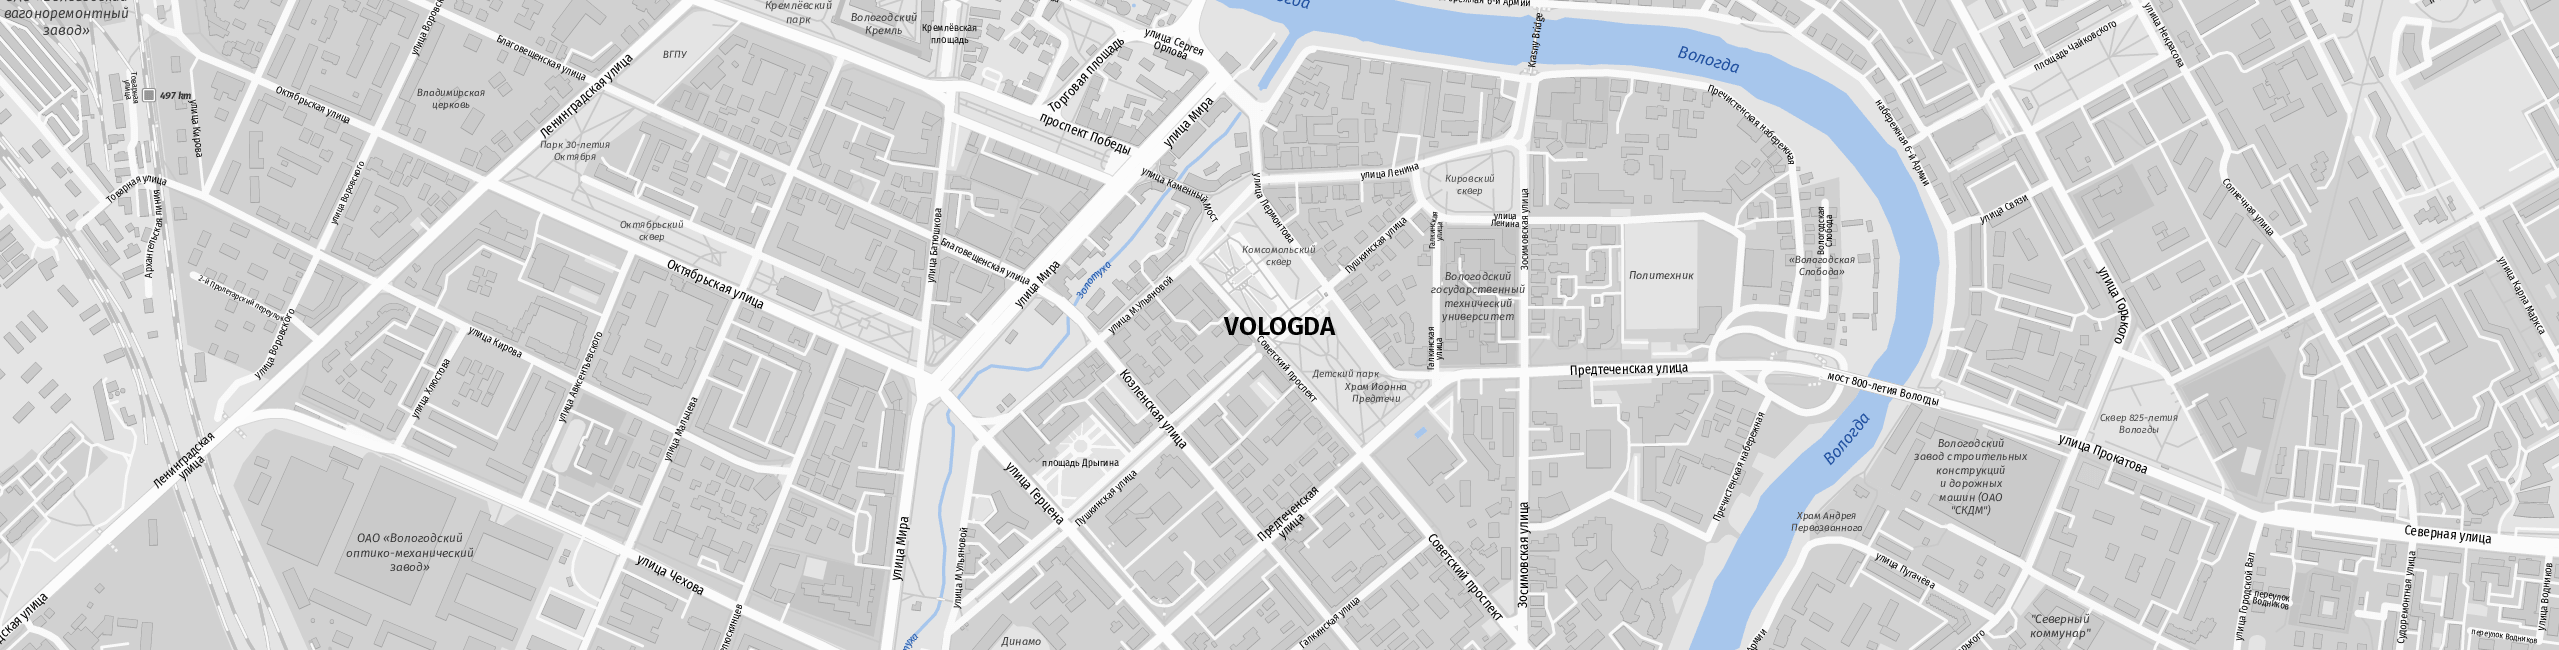 Stadtplan Vologda zum Downloaden.